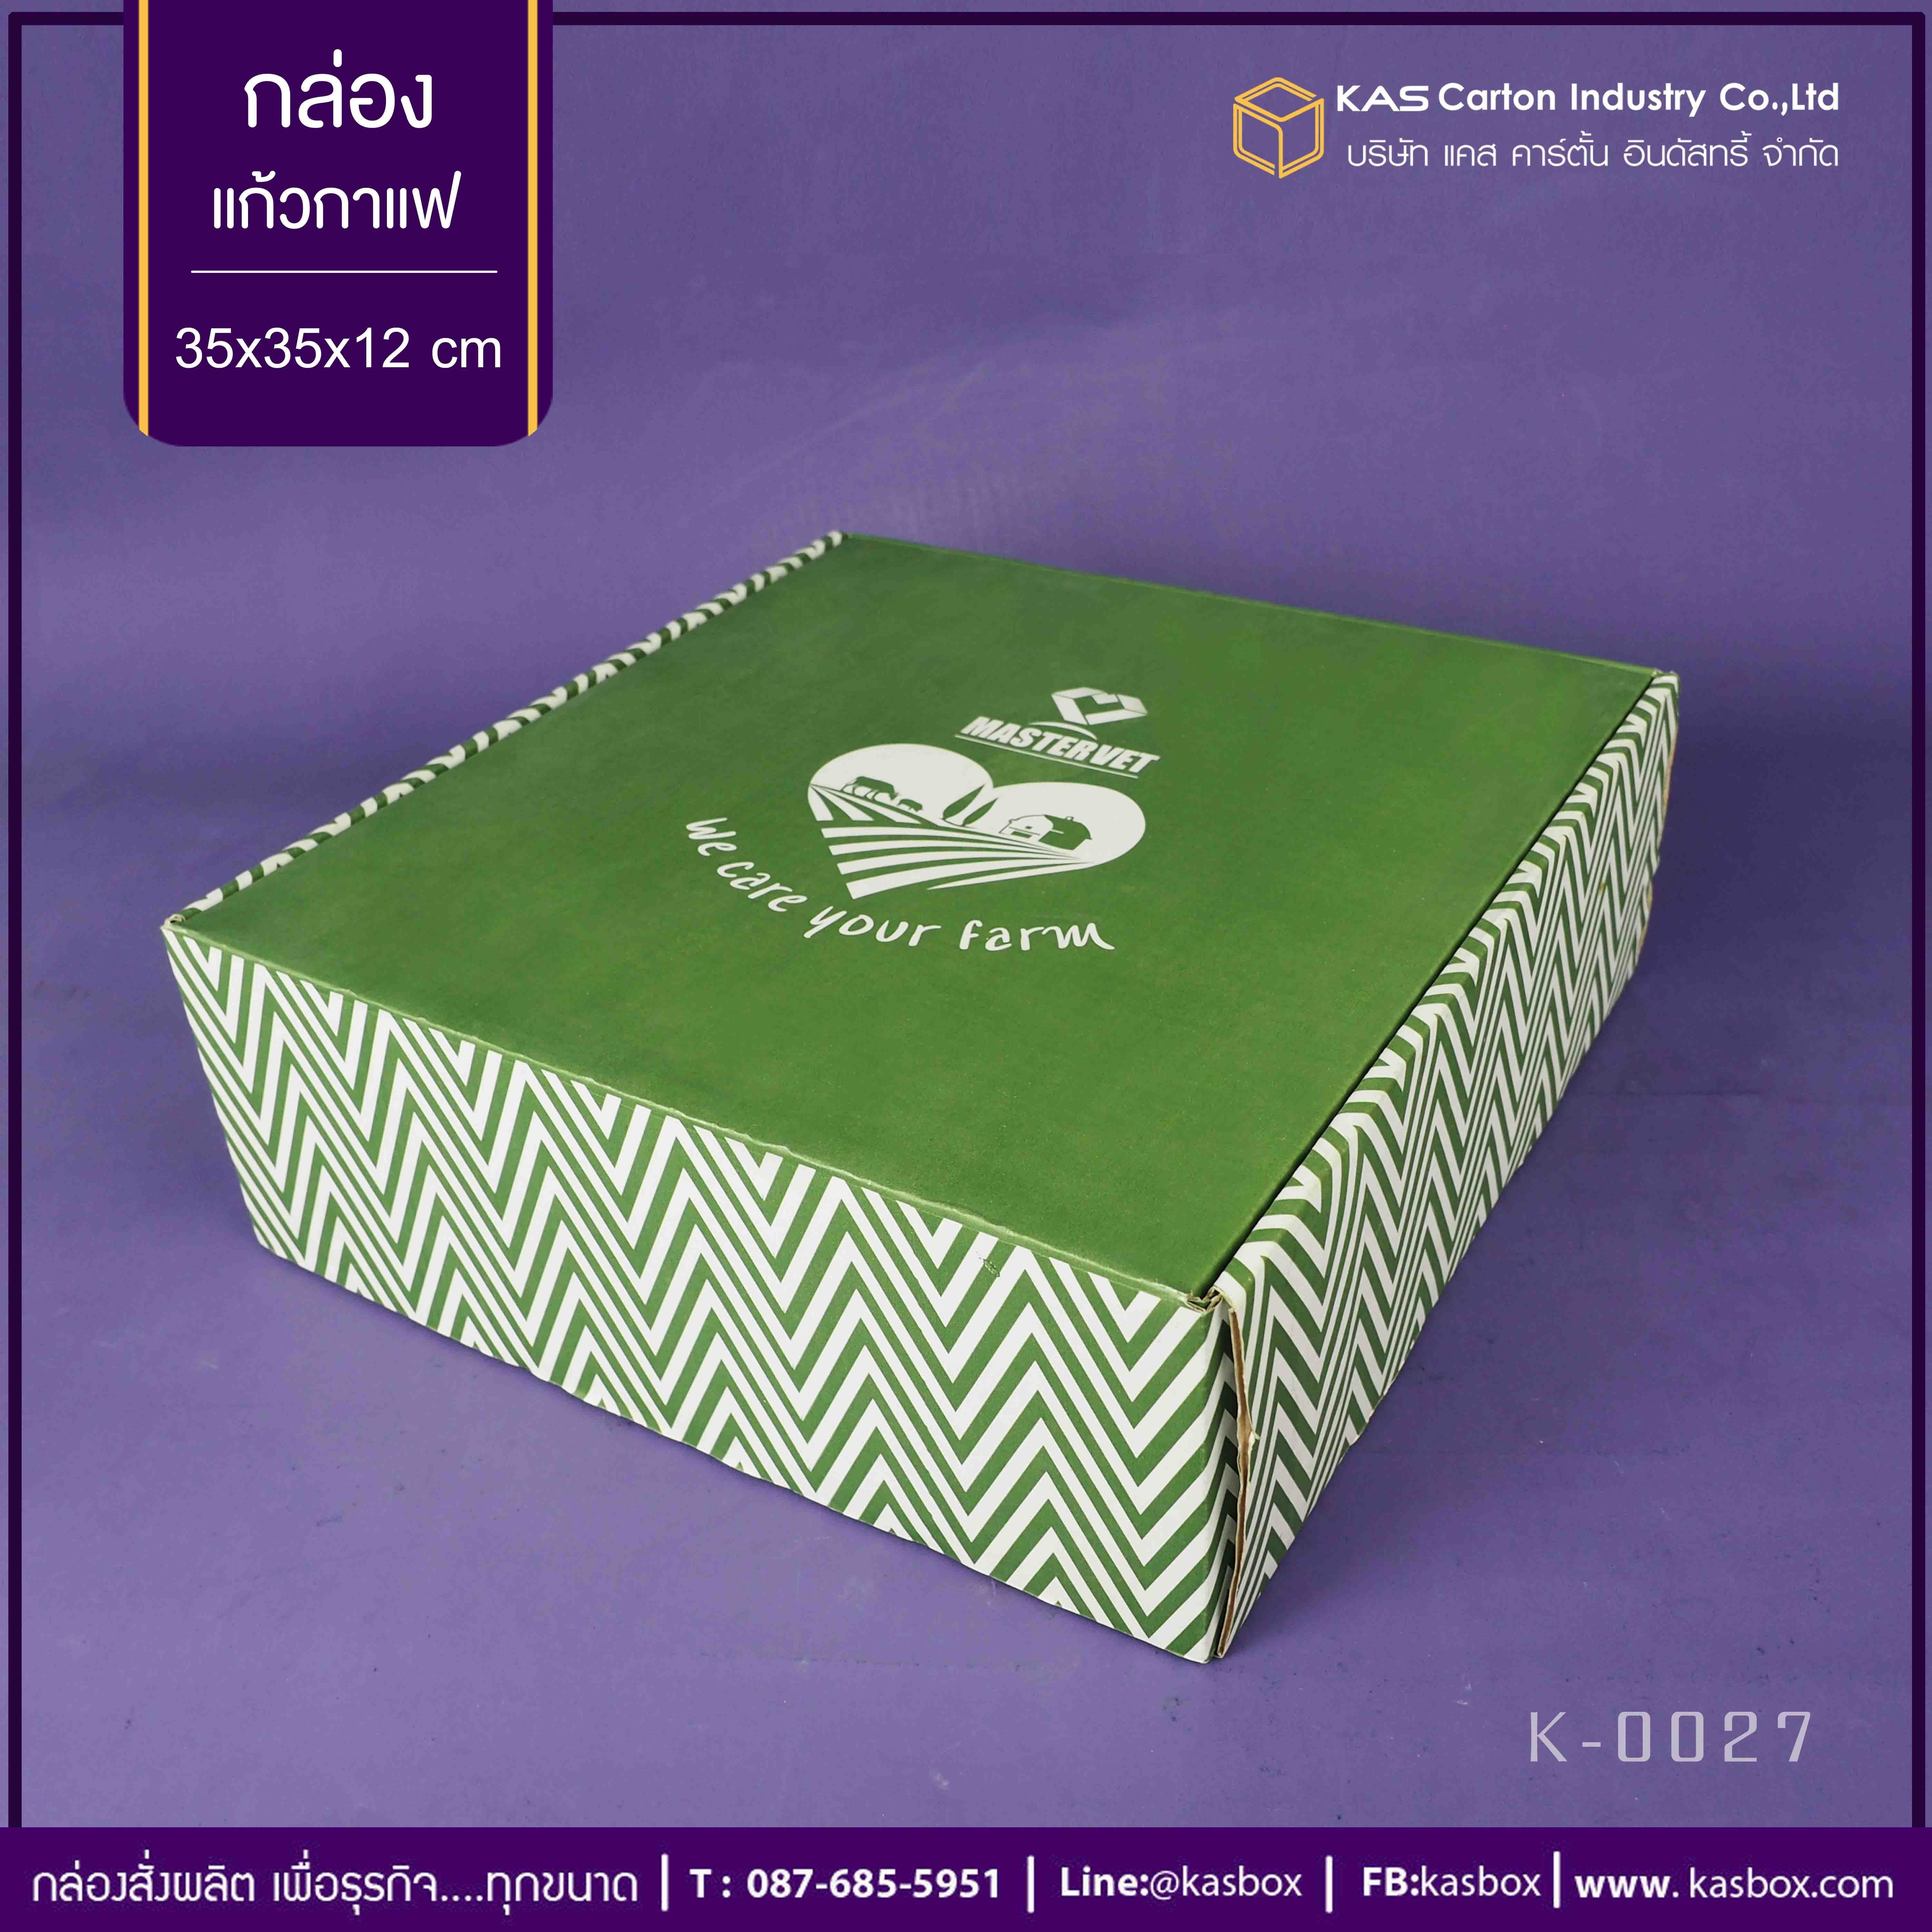 กล่องลูกฟูก สำเร็จรูป และ สั่งผลิต ตามความต้องการลูกค้า กล่องลูกฟูก SME กล่องกระดาษลูกฟูก เพื่อใส่แก้วกาแฟ Mastervet